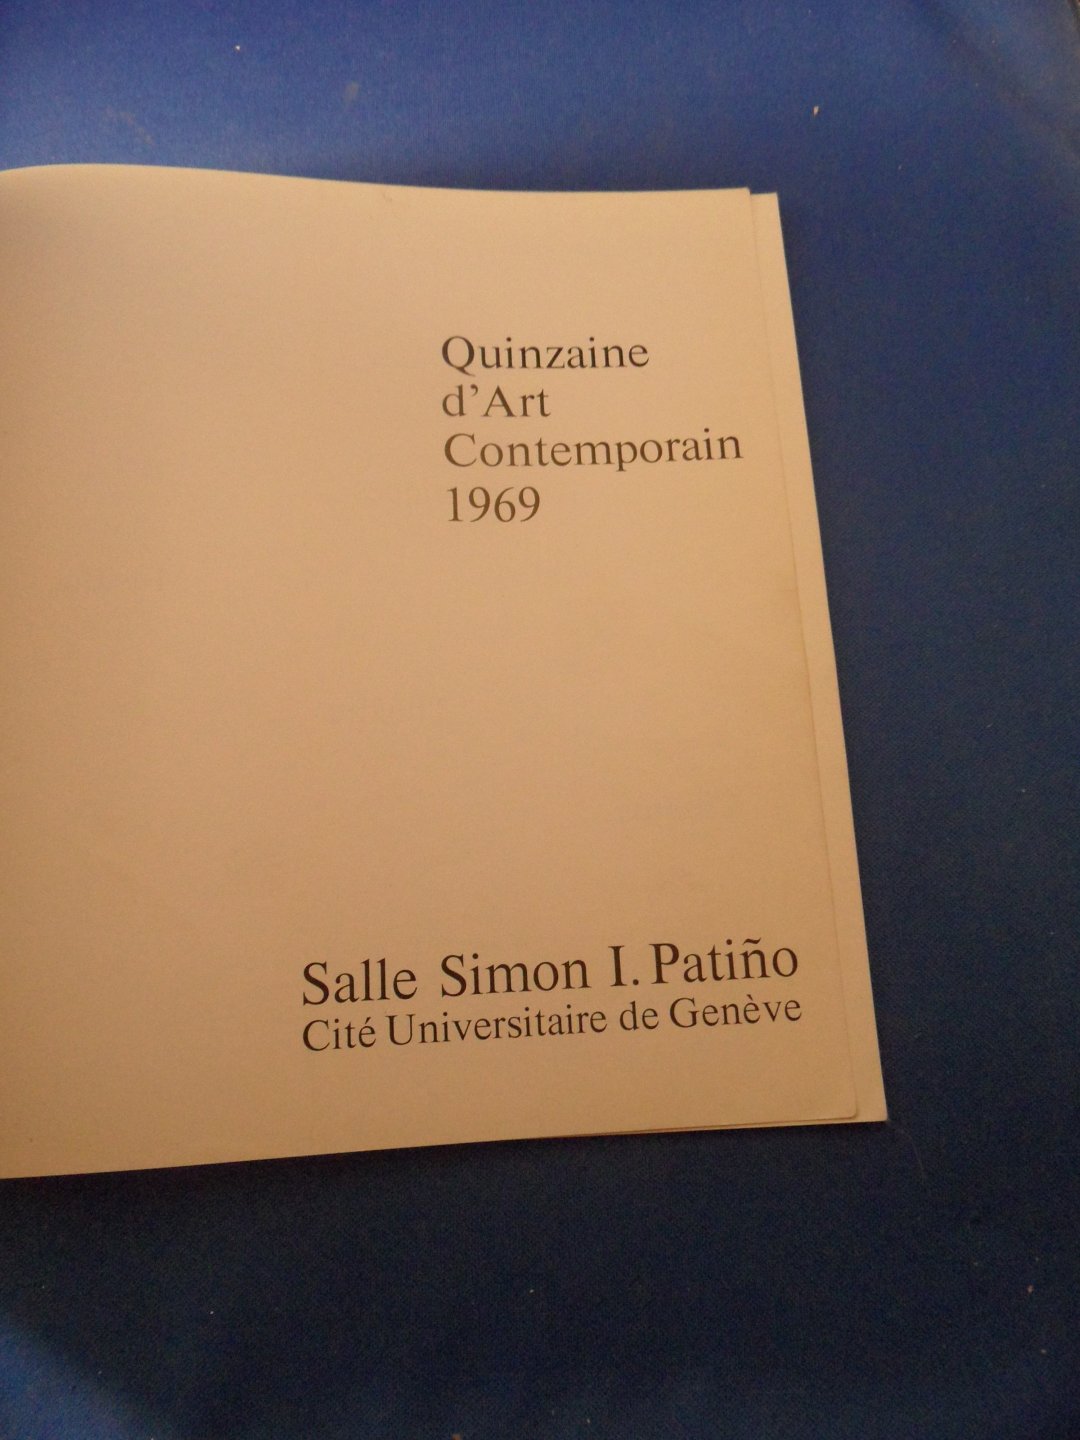 Fondation Simon I. Patino - Quinzaine d'art contemporain 1969